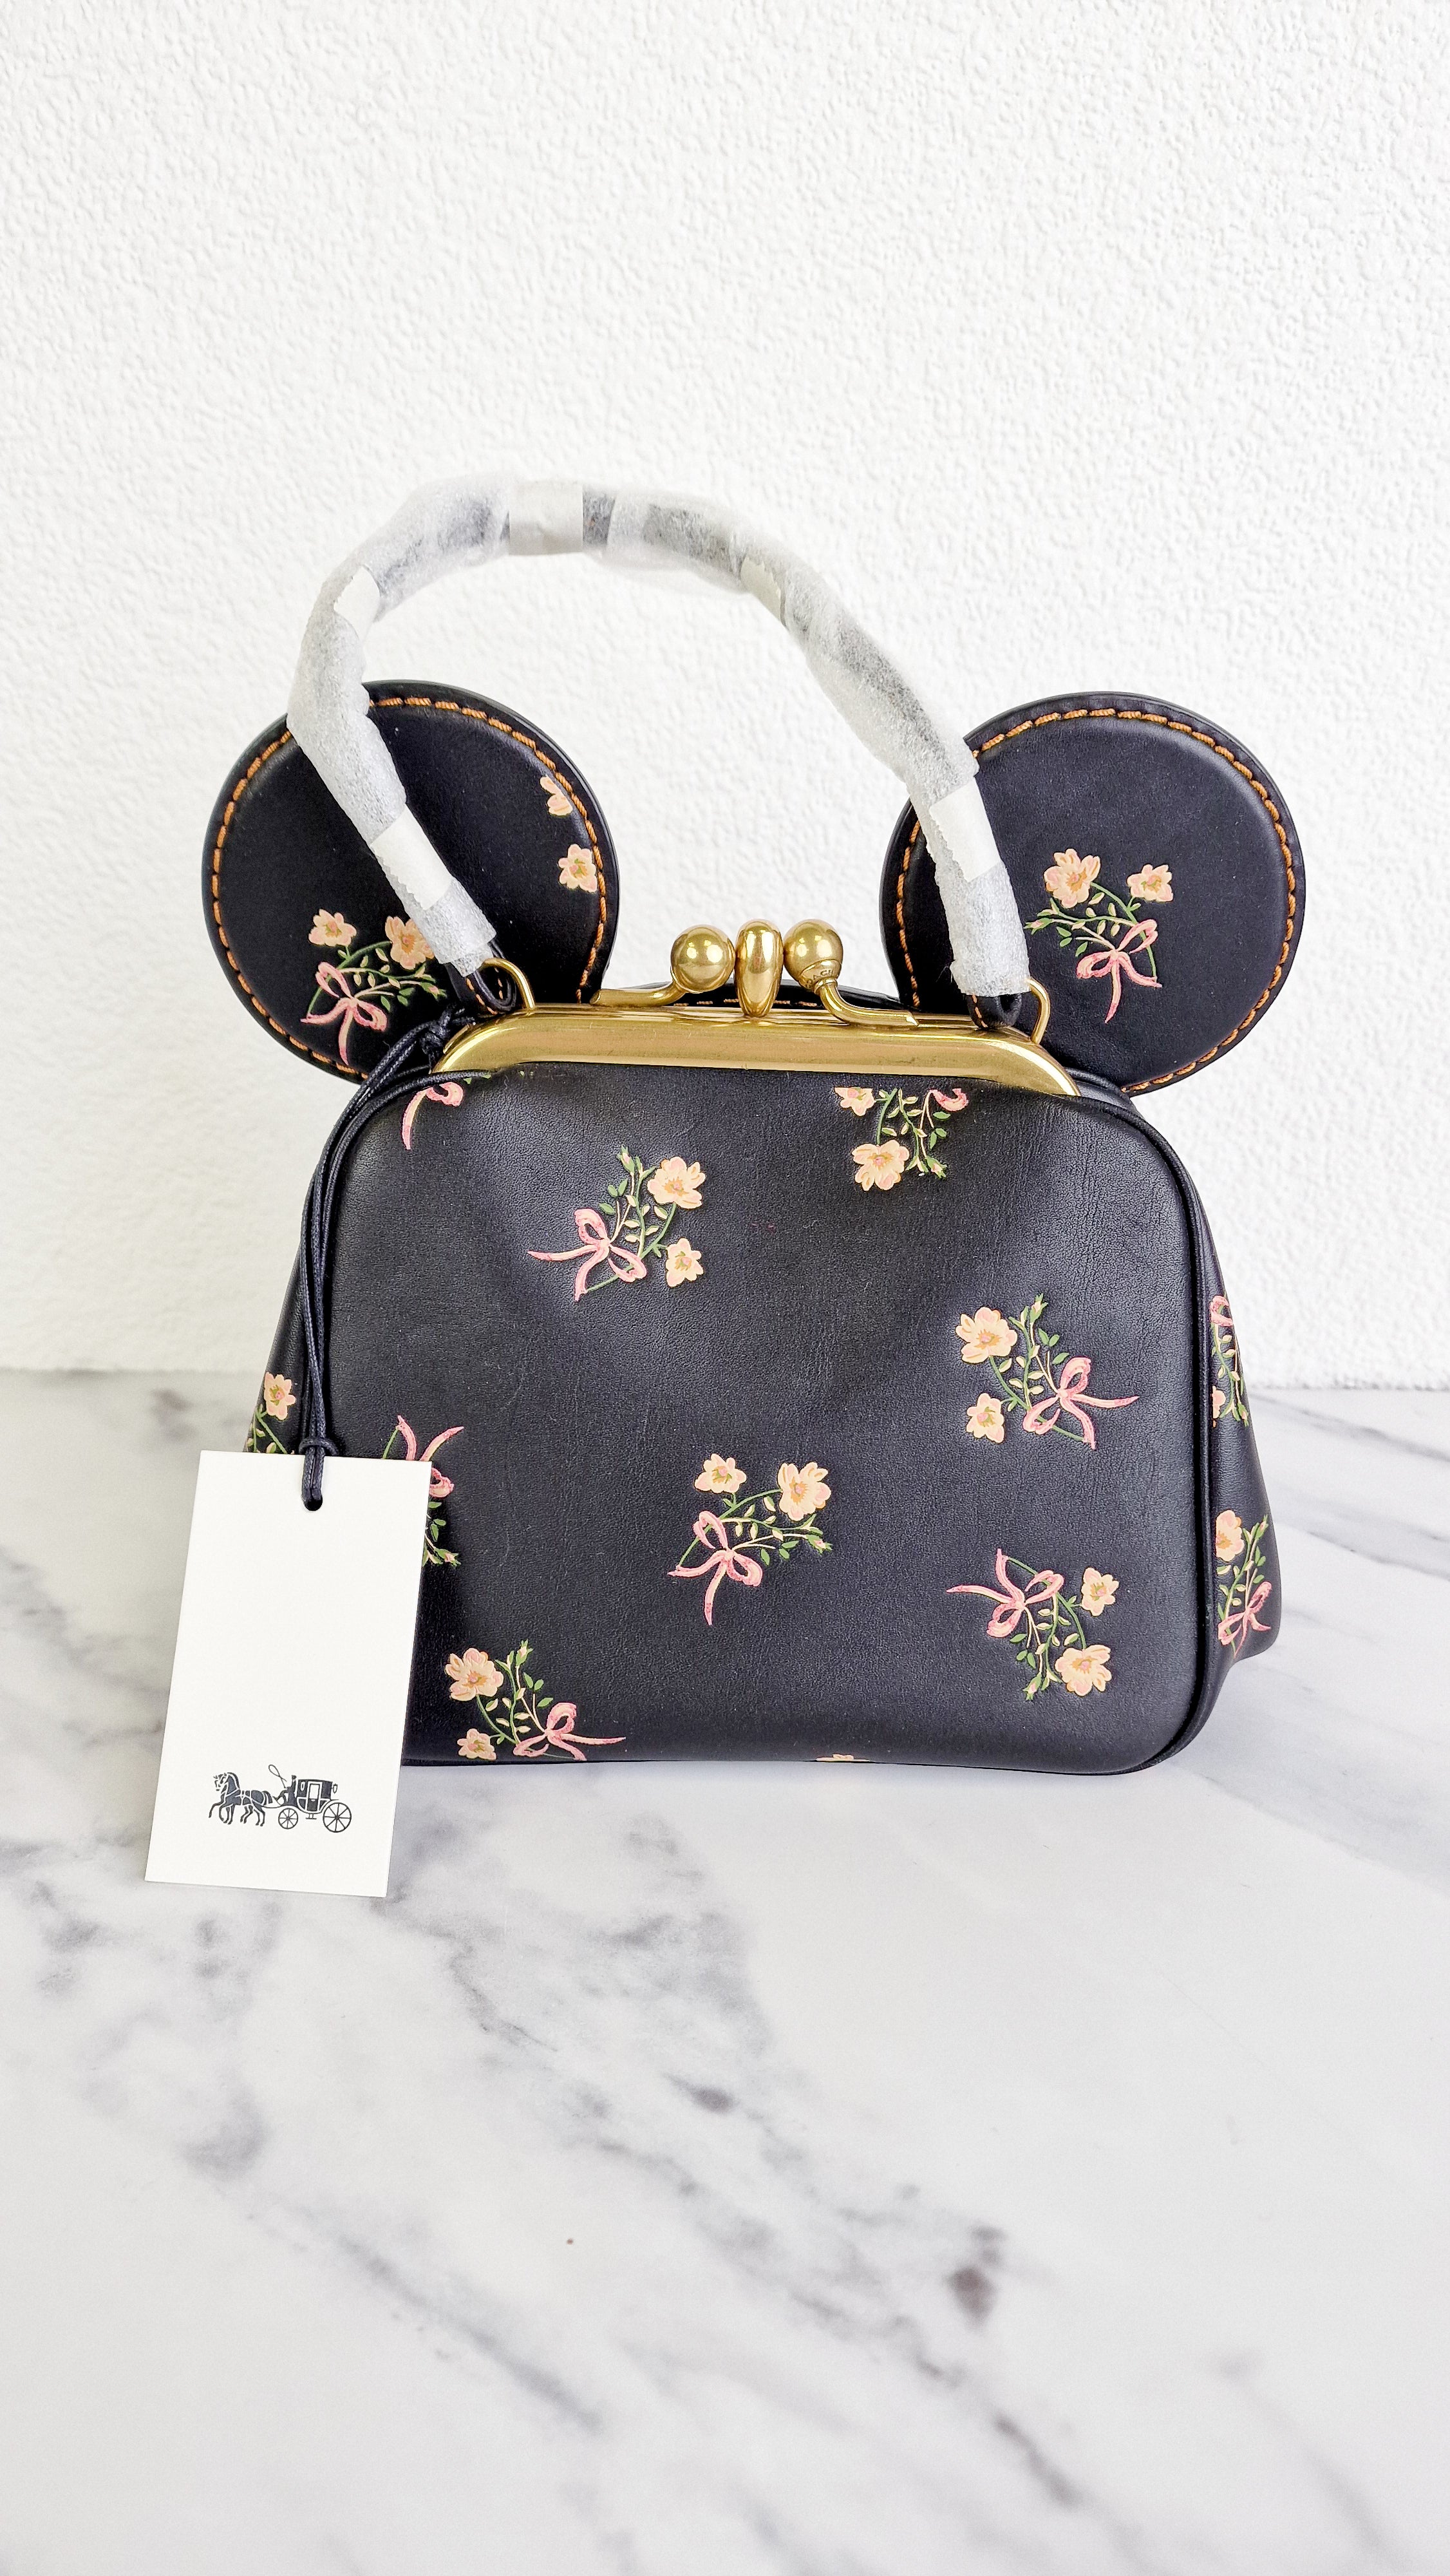 COACH®  Disney X Coach Minnie Mouse Kisslock Bag